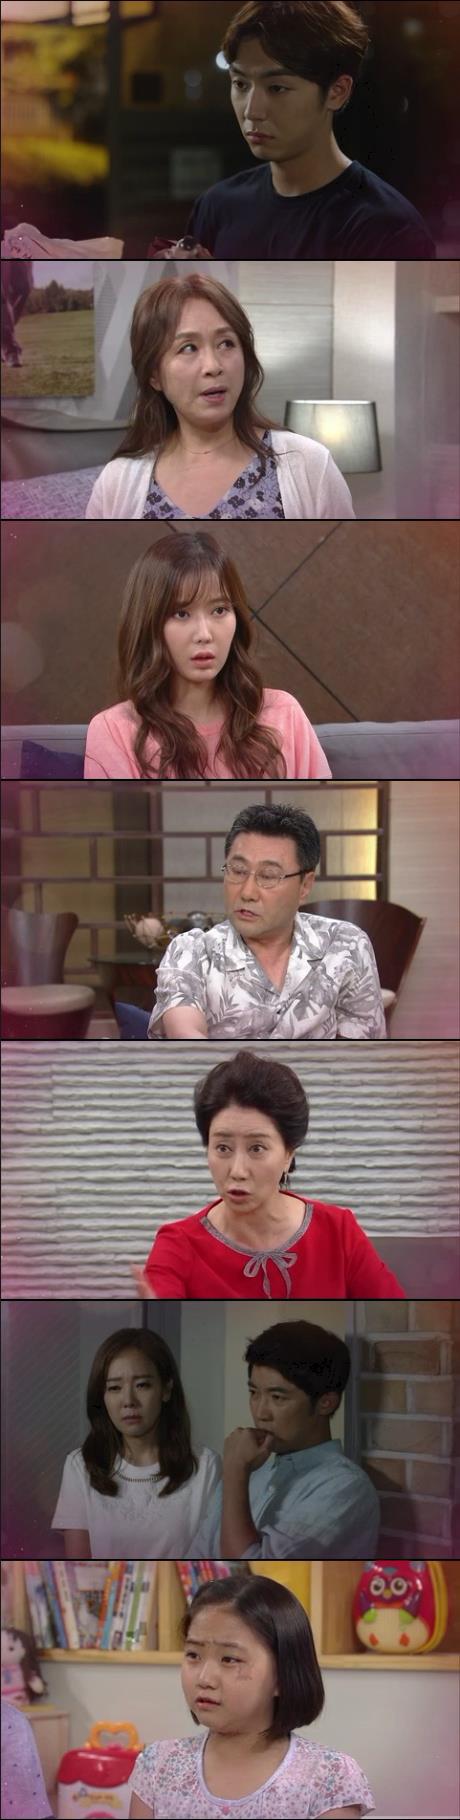 31일 밤 방송되는 KBS2  주말드라마 '아이가 다섯' 48회에서는 태민(안우연 분)의 모친 박해미가 진주(임수향)에게 헤어지라고 강요하는 장면이 그려진다./사진=KBS2 영상 캡처